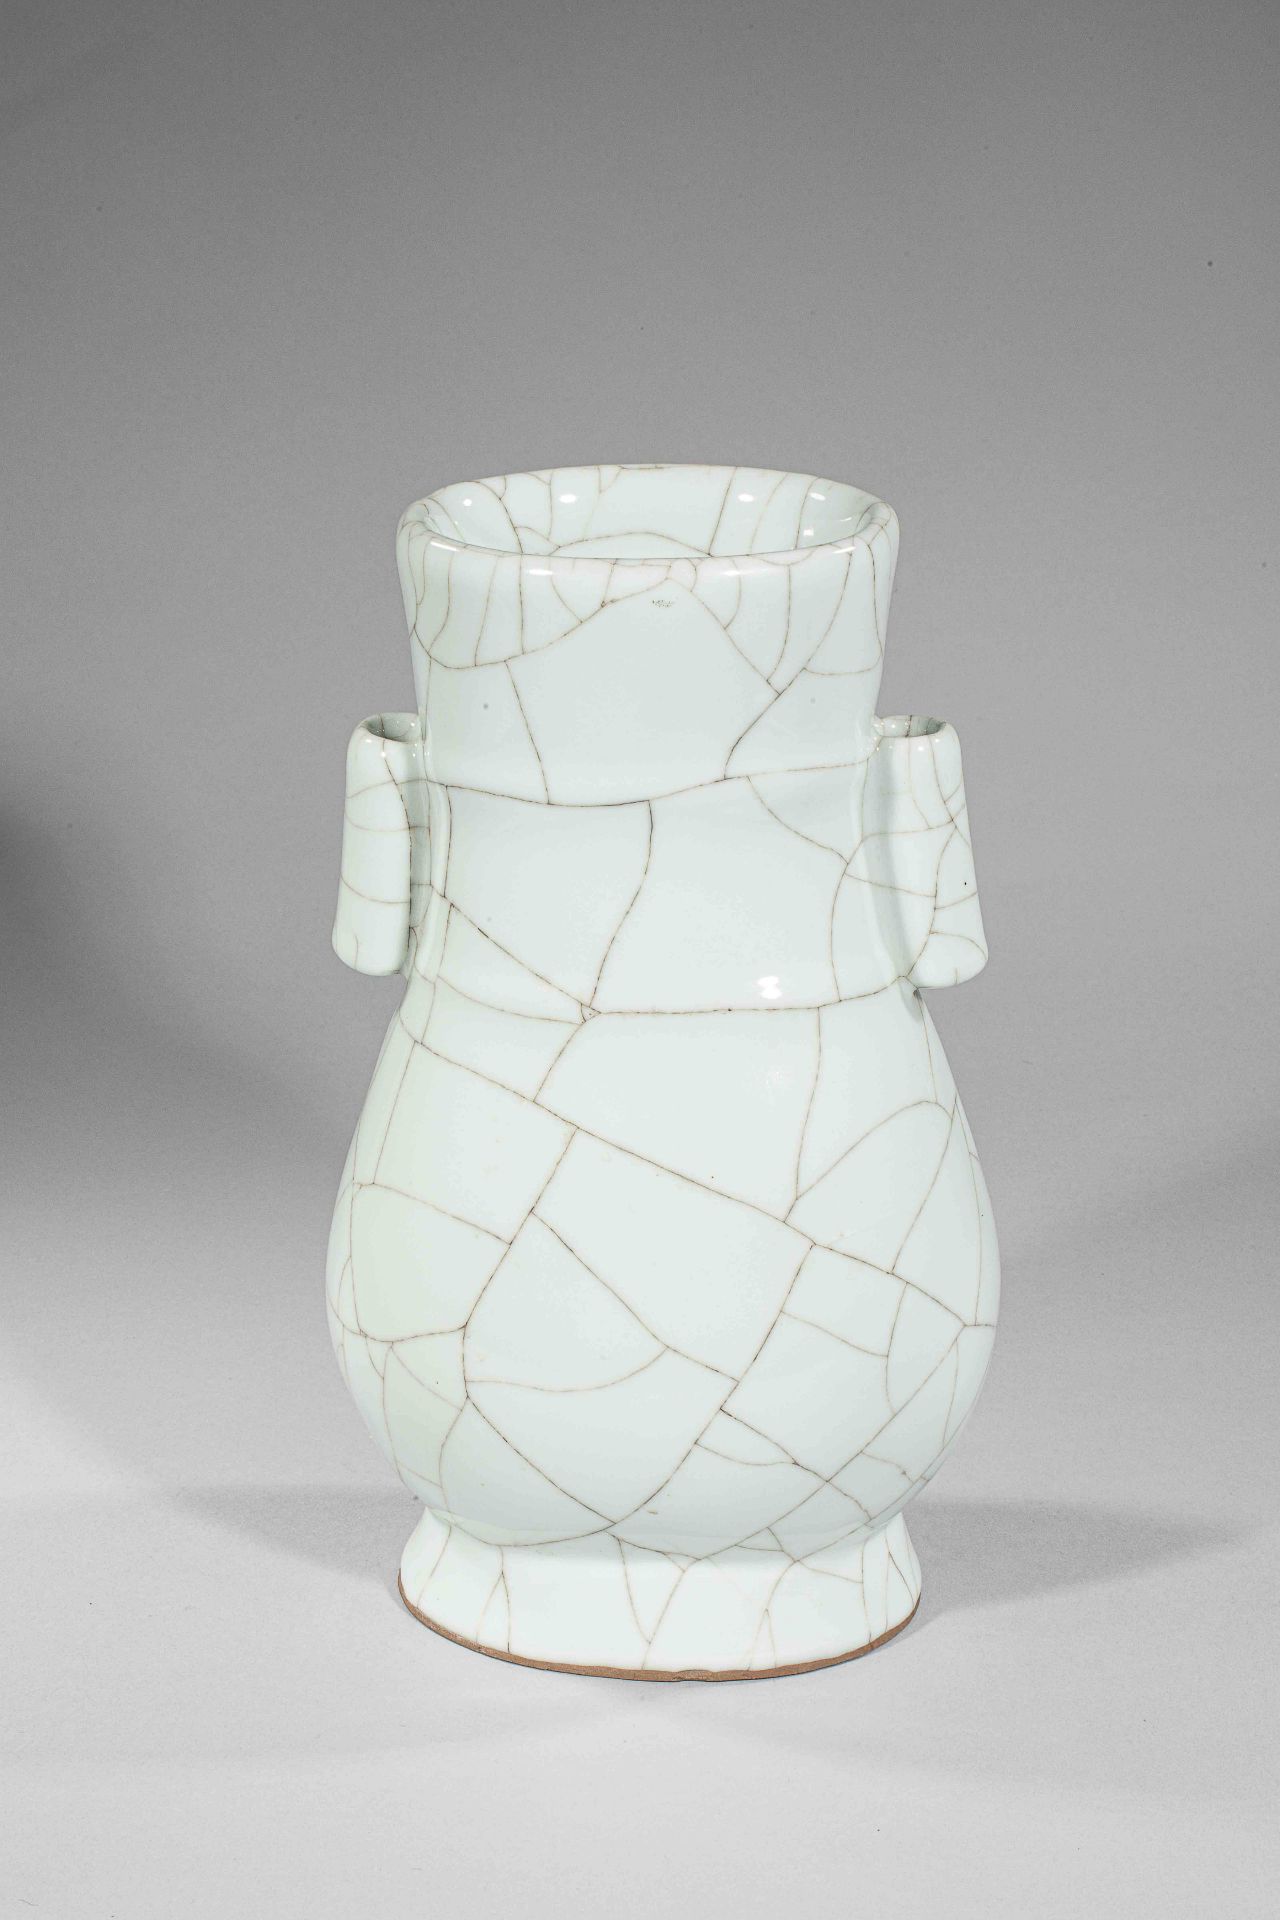 Vase Hu "Ghe Yao" à glaçure monochrome blanche larges craquelures veinées de noir. [...]